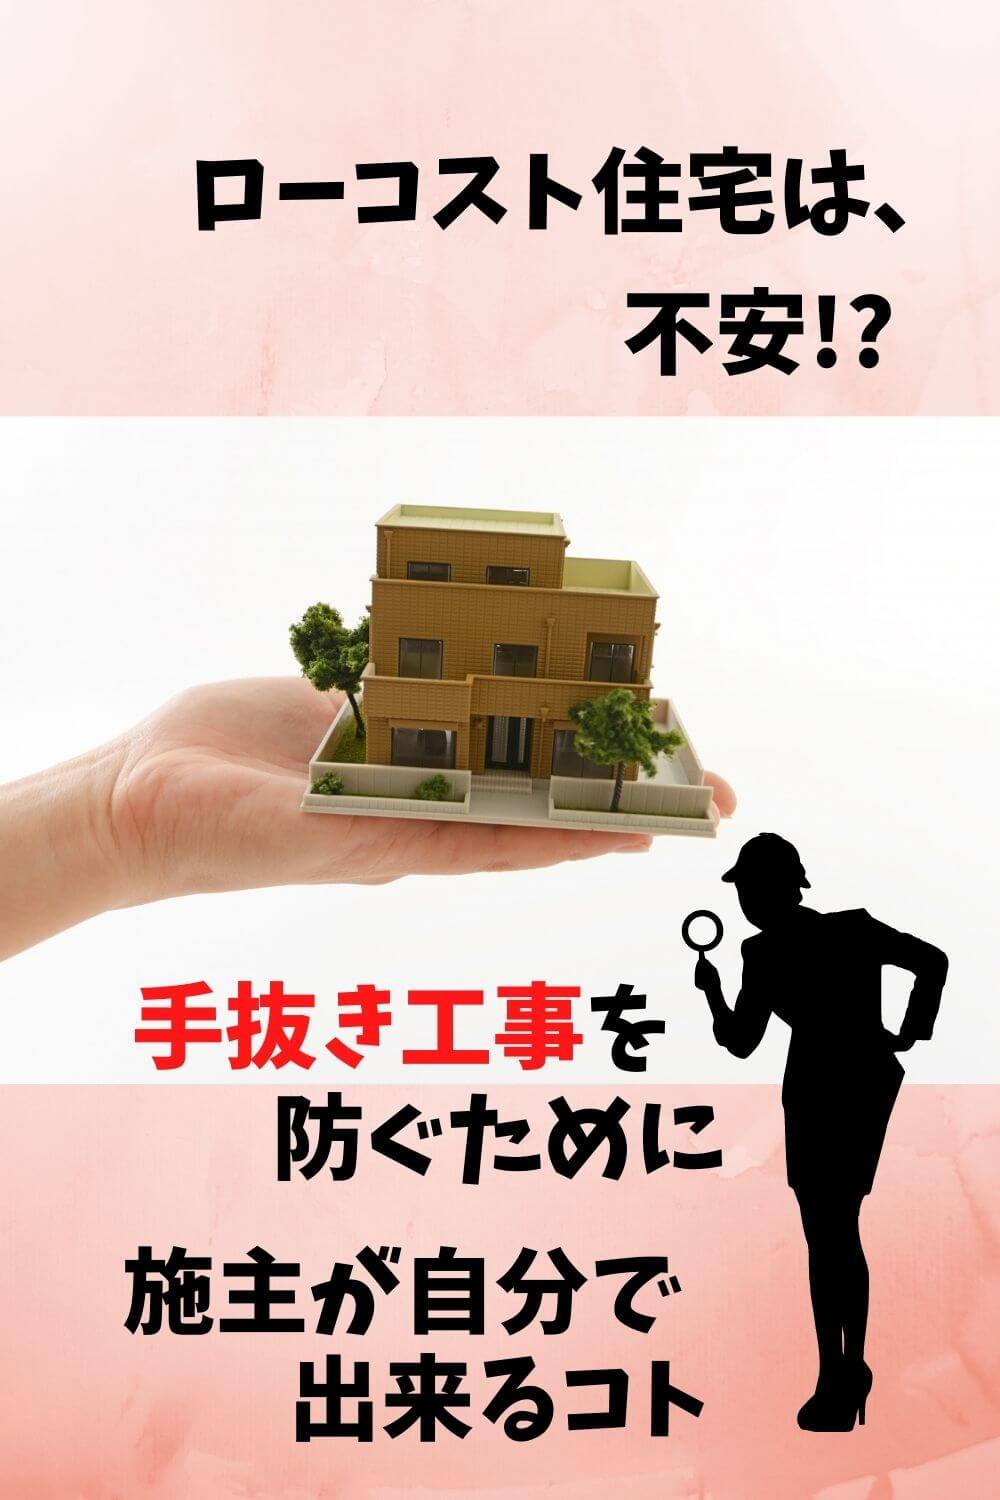 ローコスト住宅で後悔したくない 施主ができる 手抜き工事を防ぐ対策とは 札幌のローコスト住宅 おすすめ業者の比較と口コミナビ